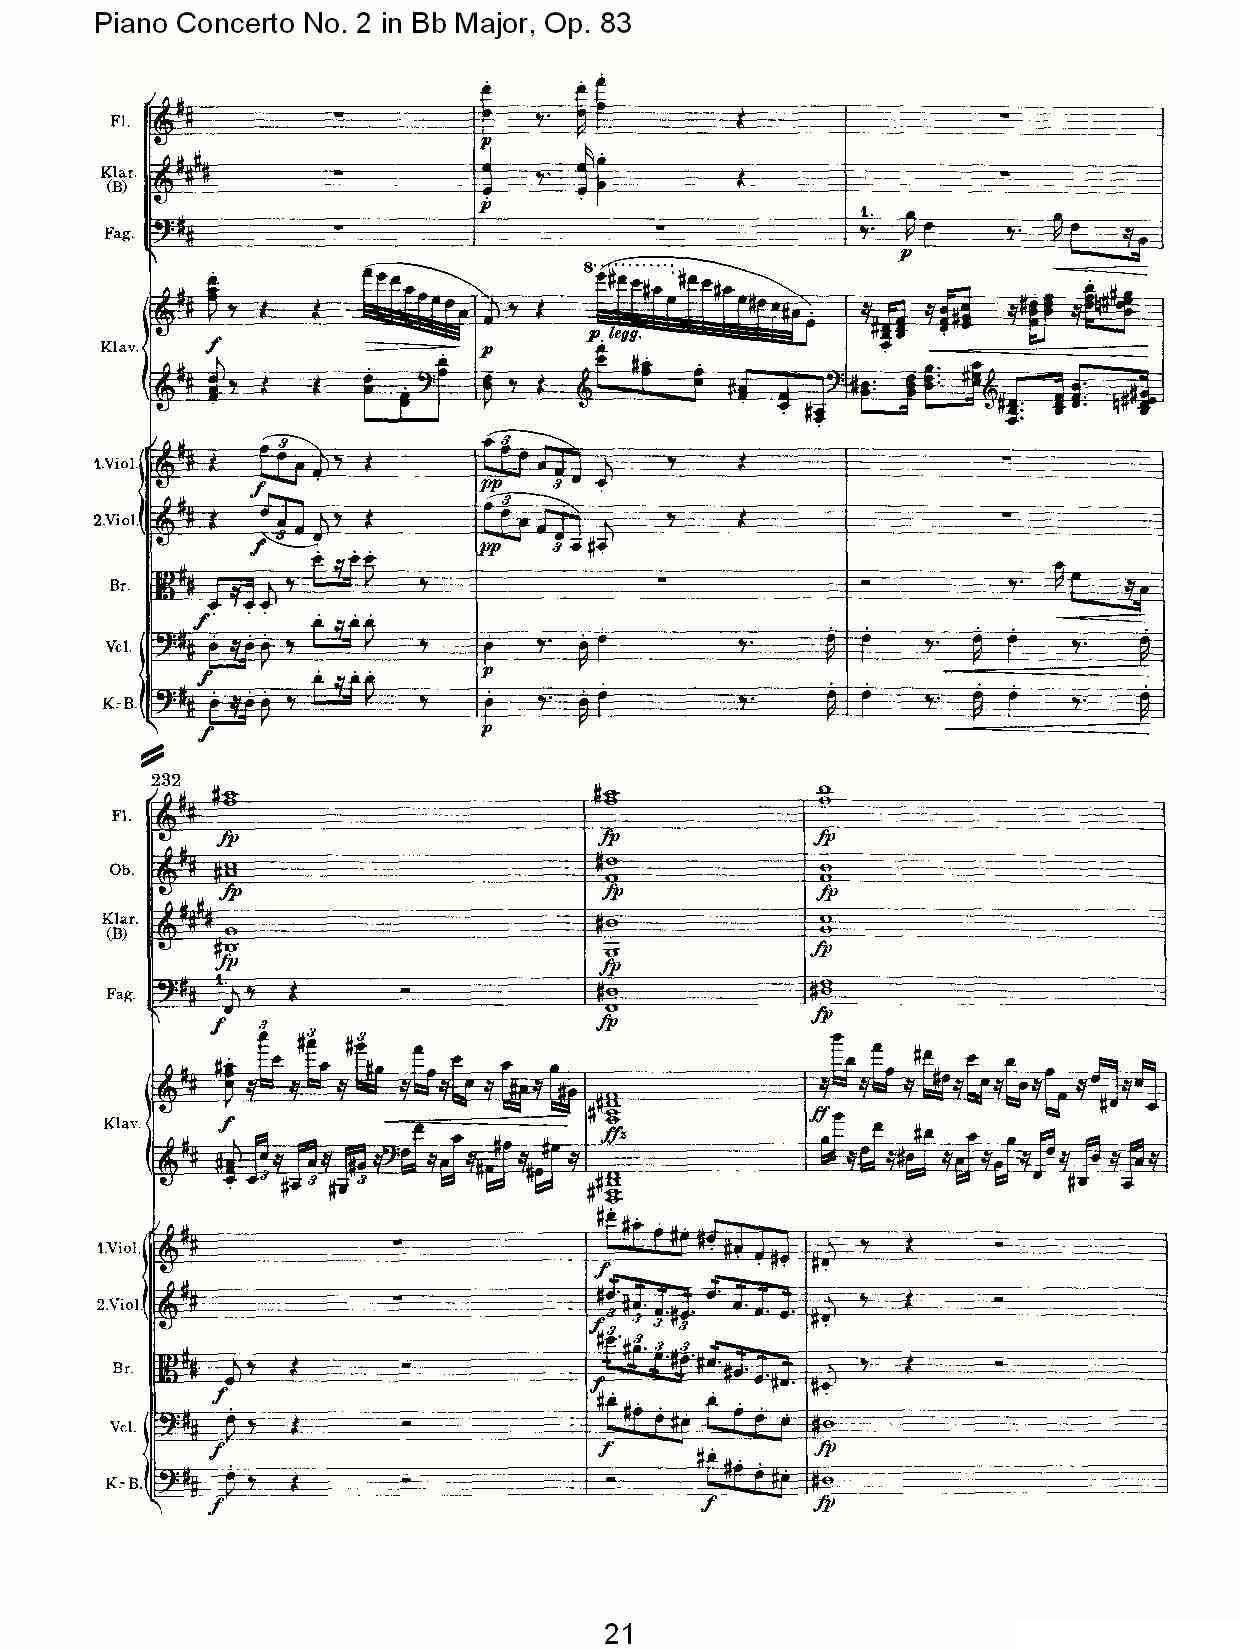 Bb大调钢琴第二协奏曲, Op.83第一乐章（一）钢琴曲谱（图22）